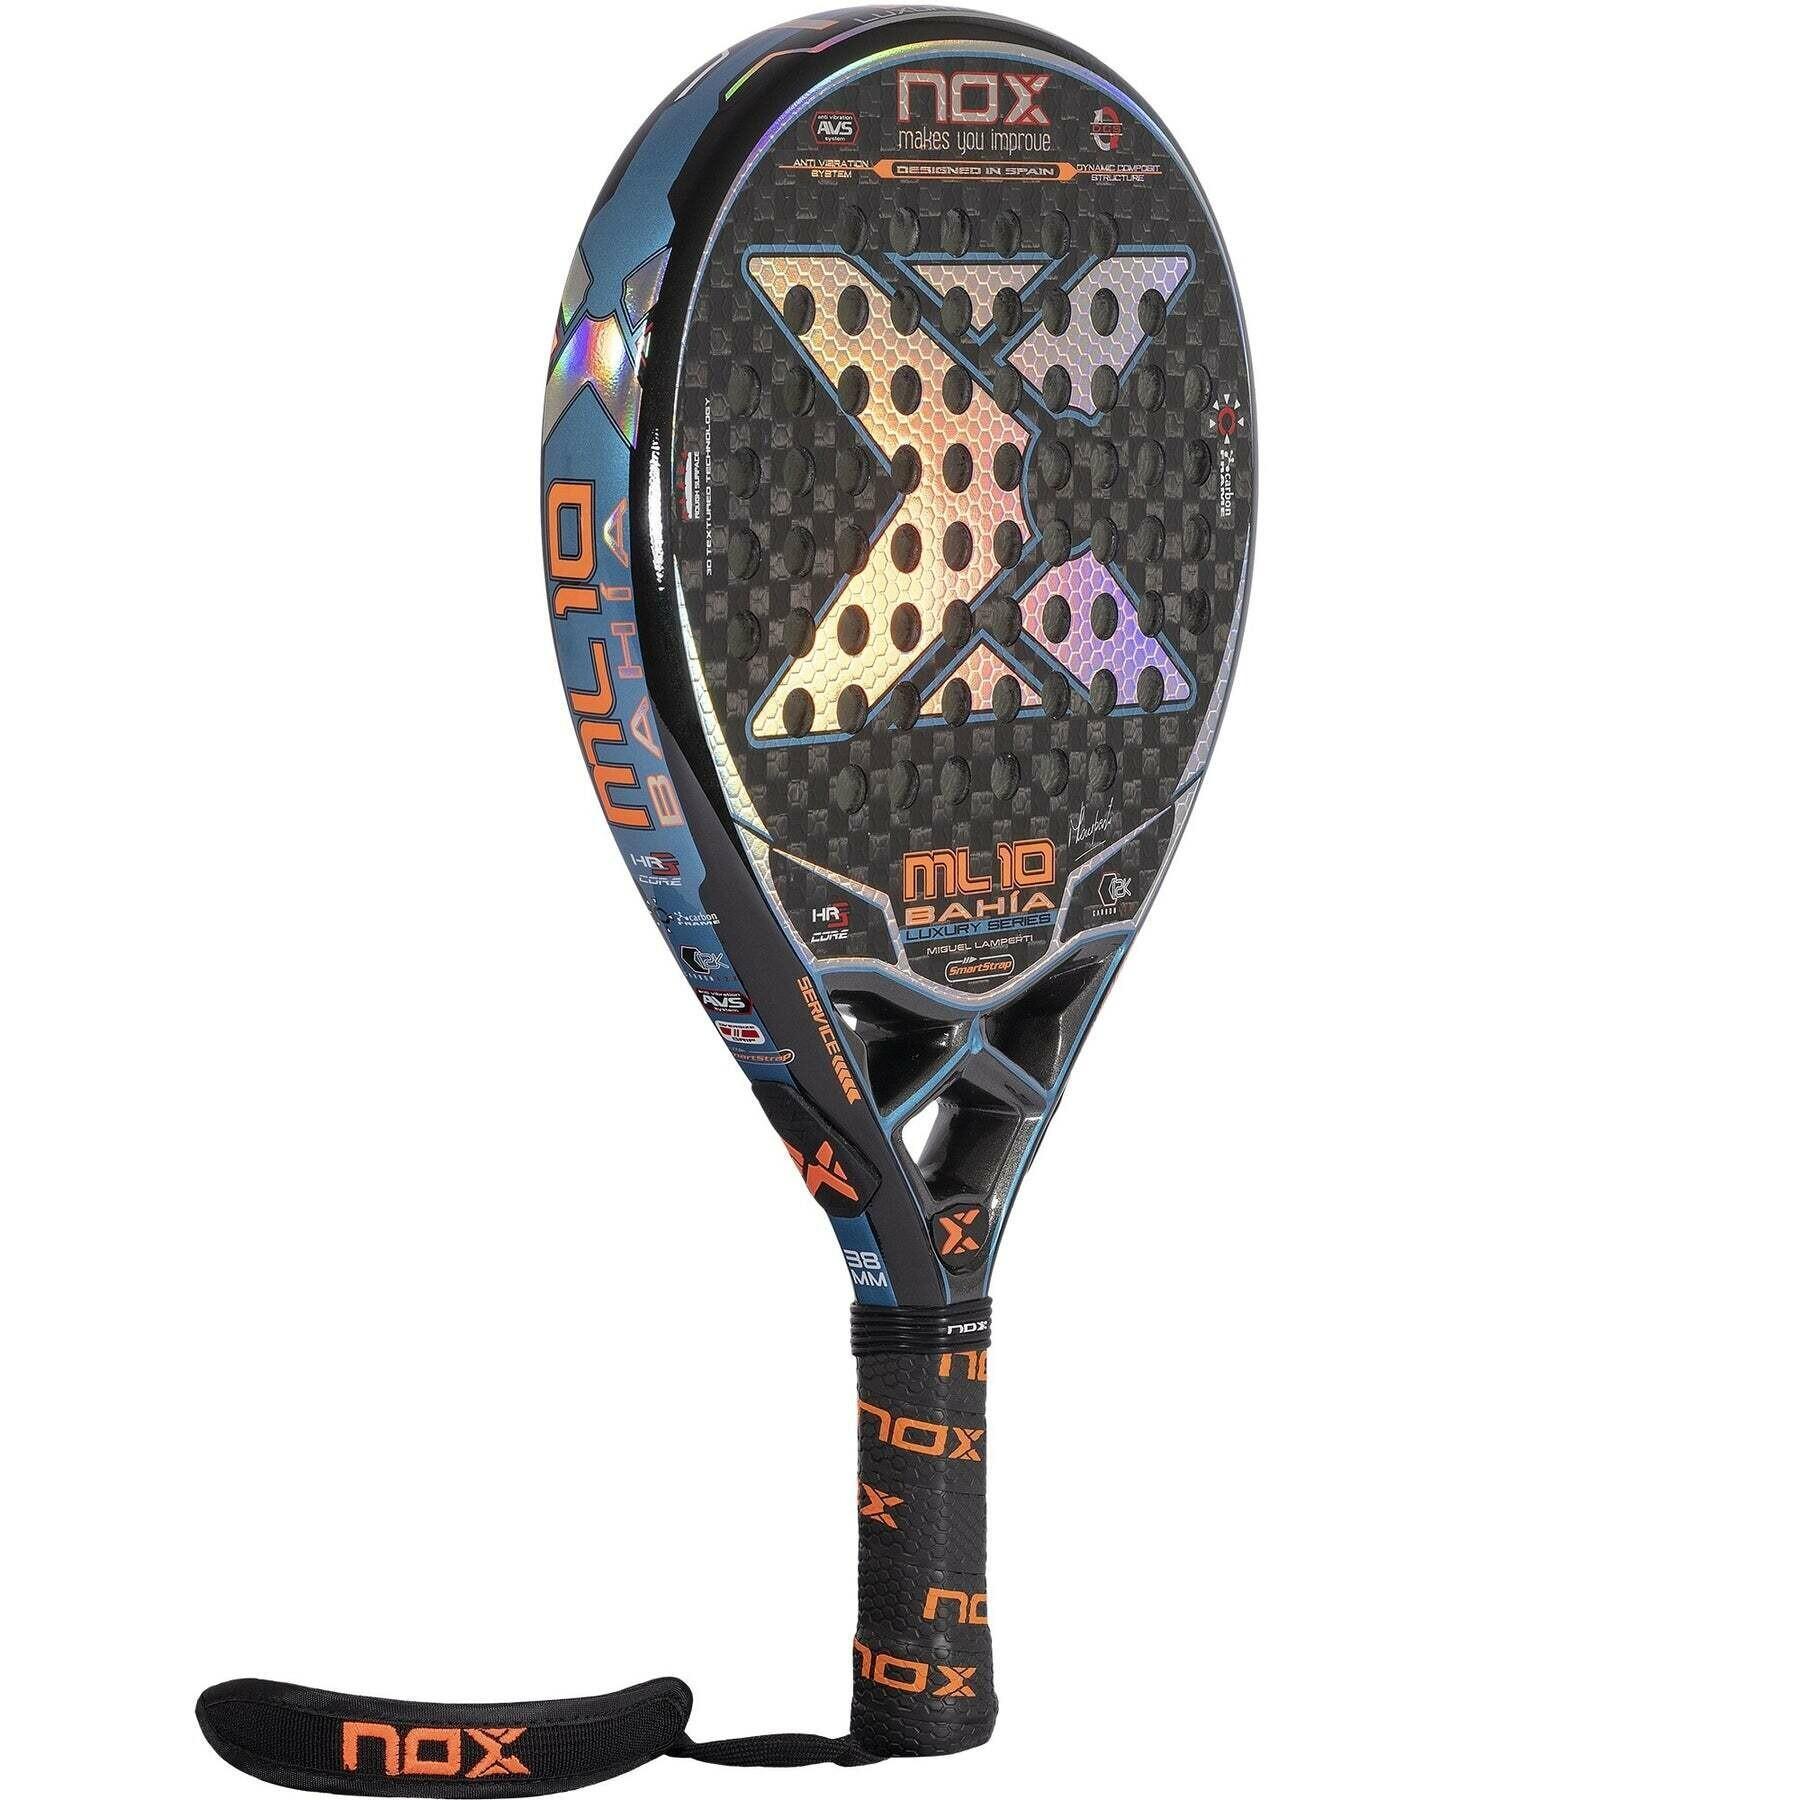 Padel racket Nox Ml10 Bahia Luxury Series